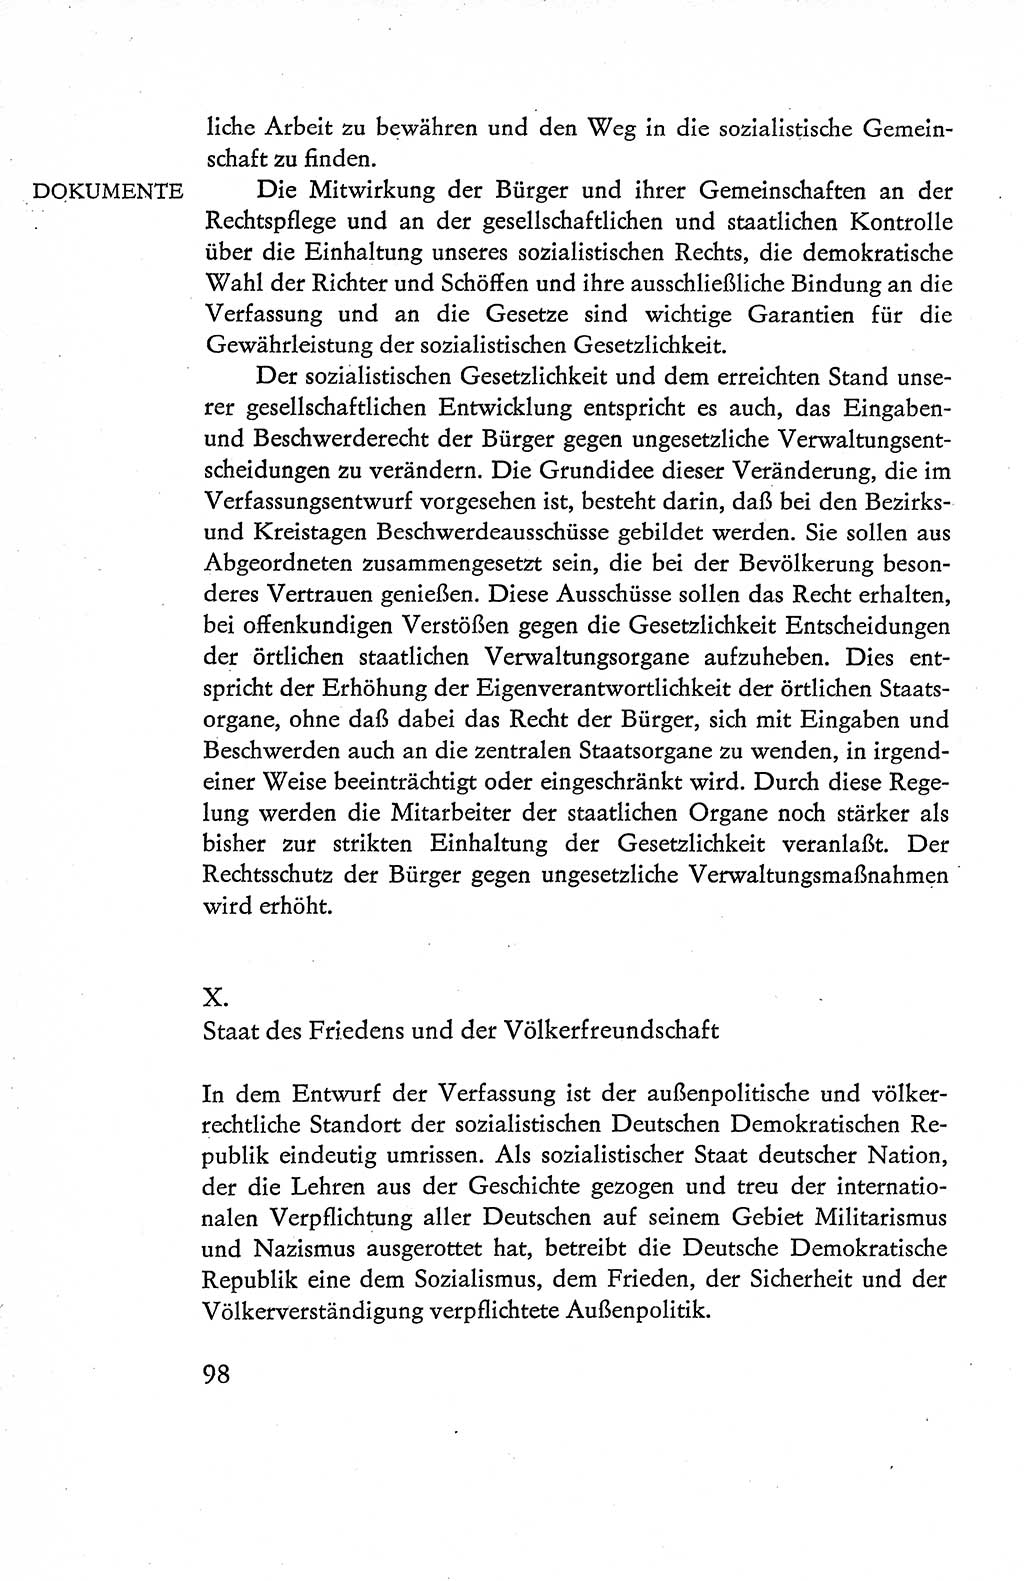 Verfassung der Deutschen Demokratischen Republik (DDR), Dokumente, Kommentar 1969, Band 1, Seite 98 (Verf. DDR Dok. Komm. 1969, Bd. 1, S. 98)